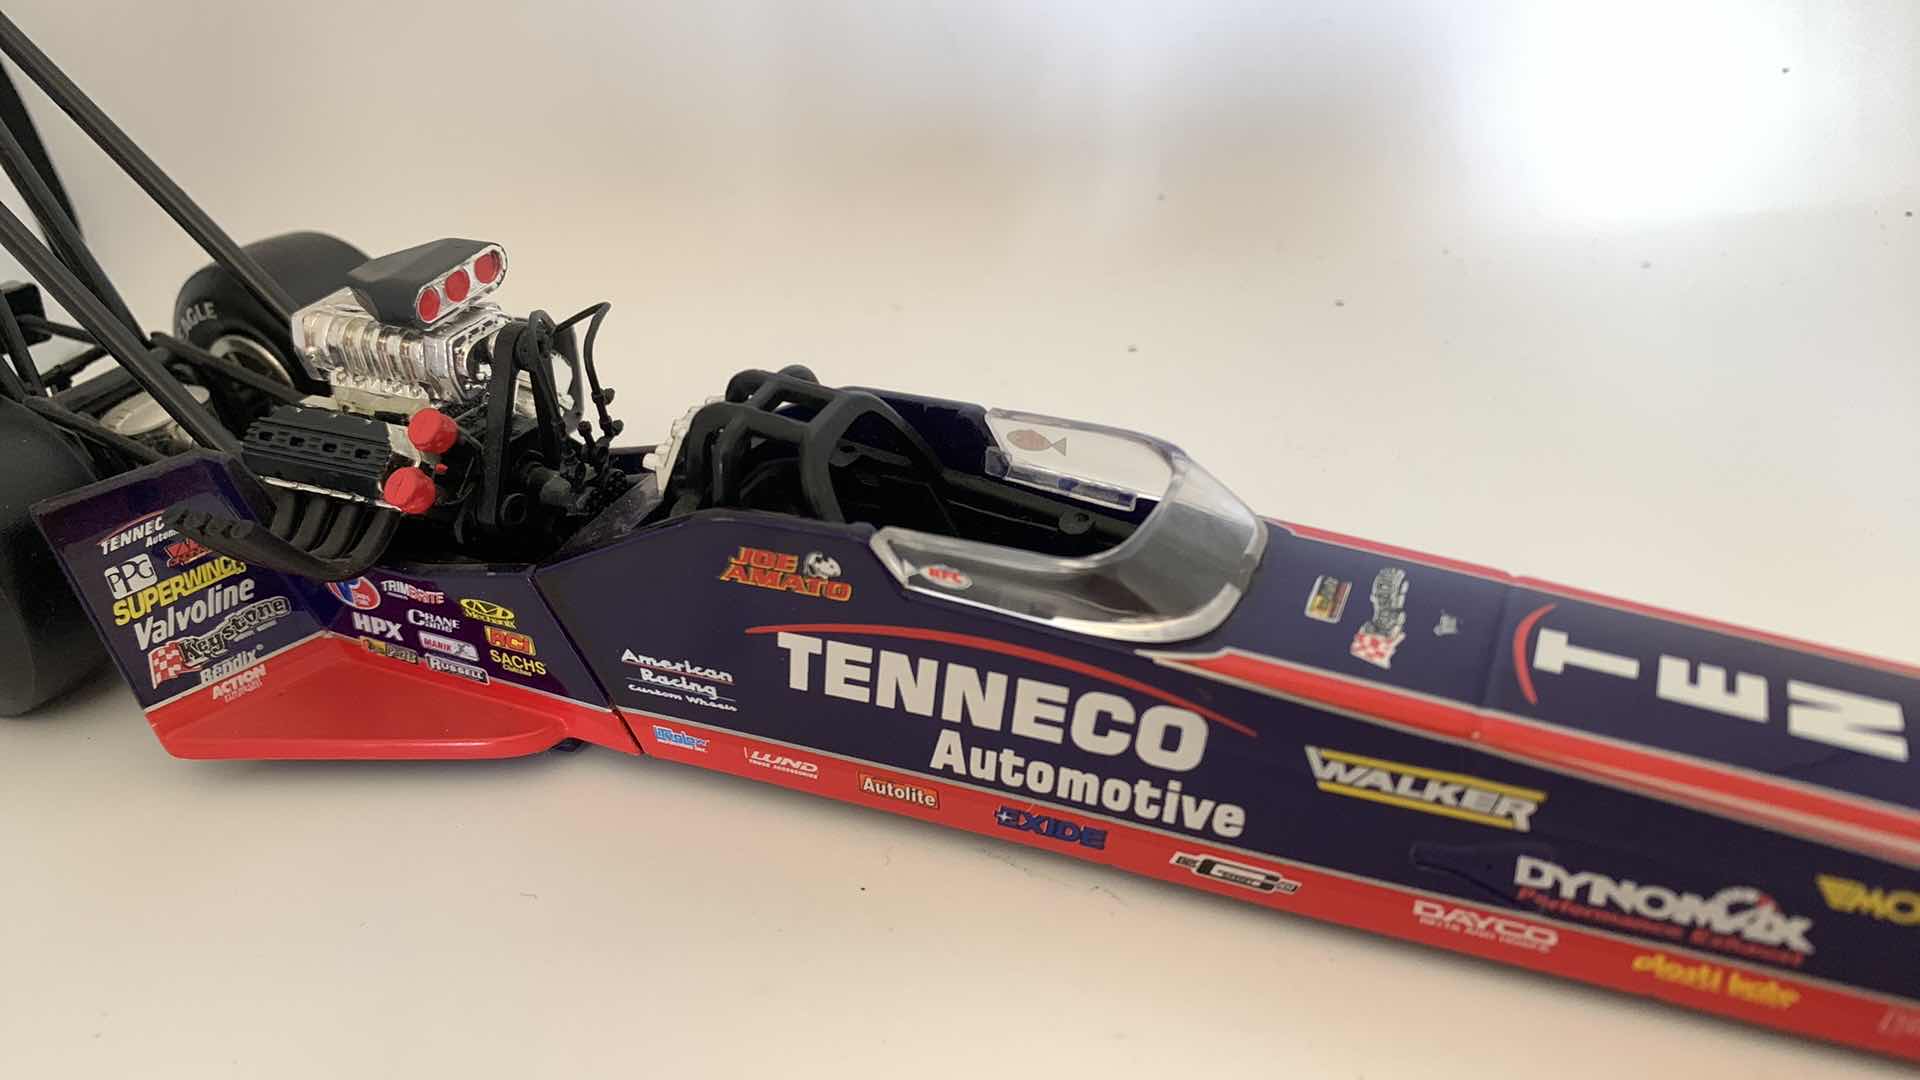 Photo 4 of TENNECO AUTOMOTIVE TOP FUEL DIE CAST RACE CAR.